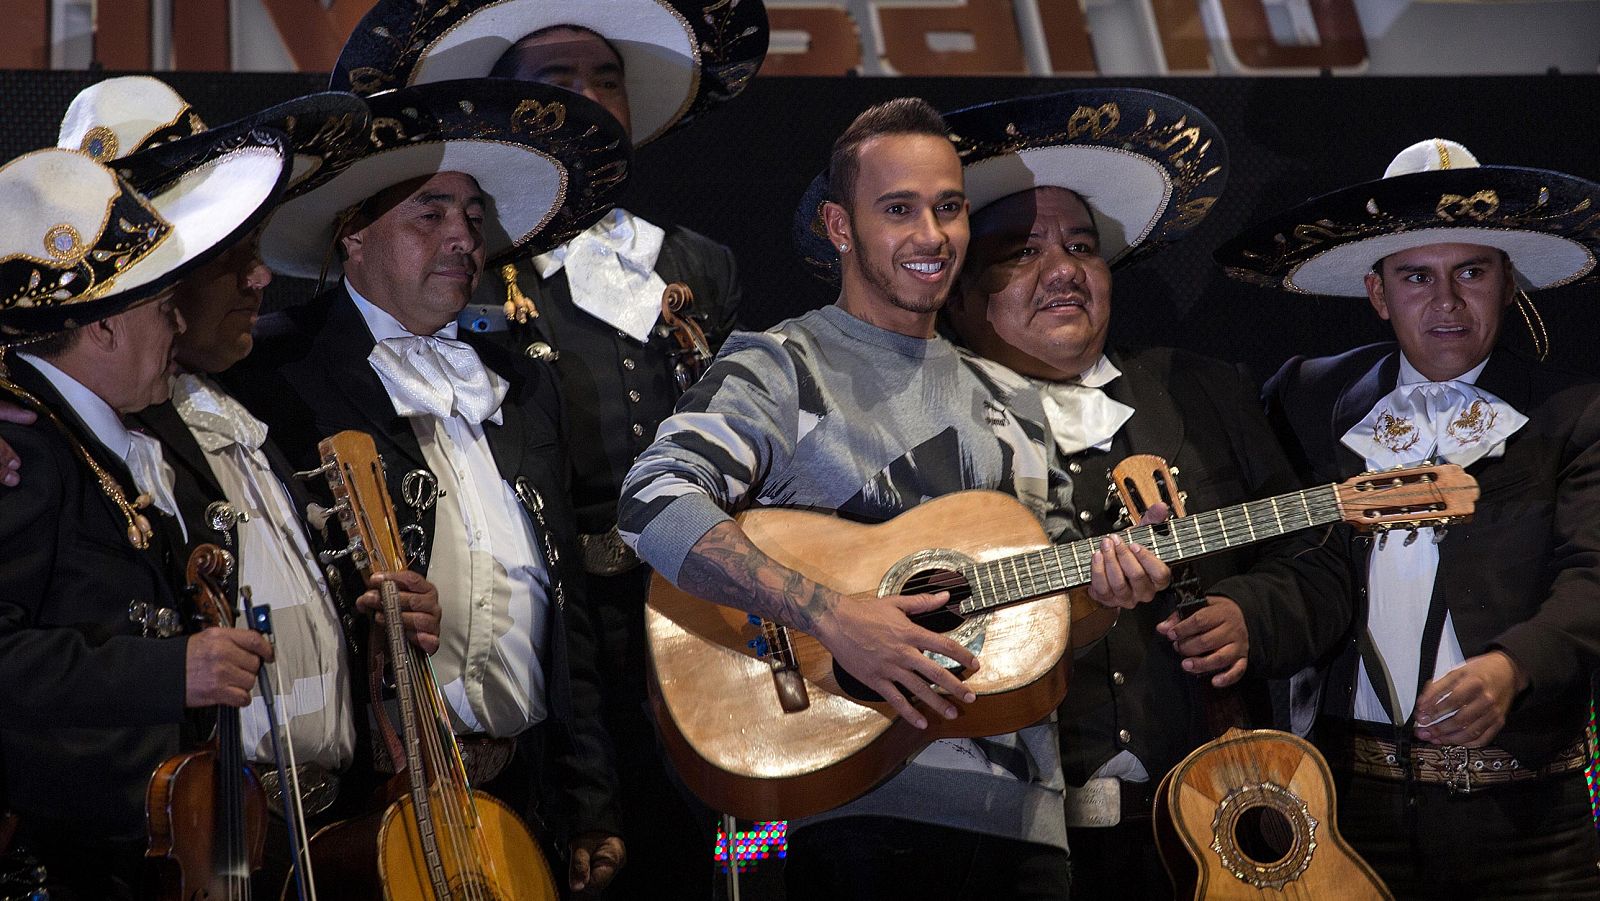 Lewis Hamilton, campeón del mundo de F1, rodeado de mariachis en la promoción del GP de México